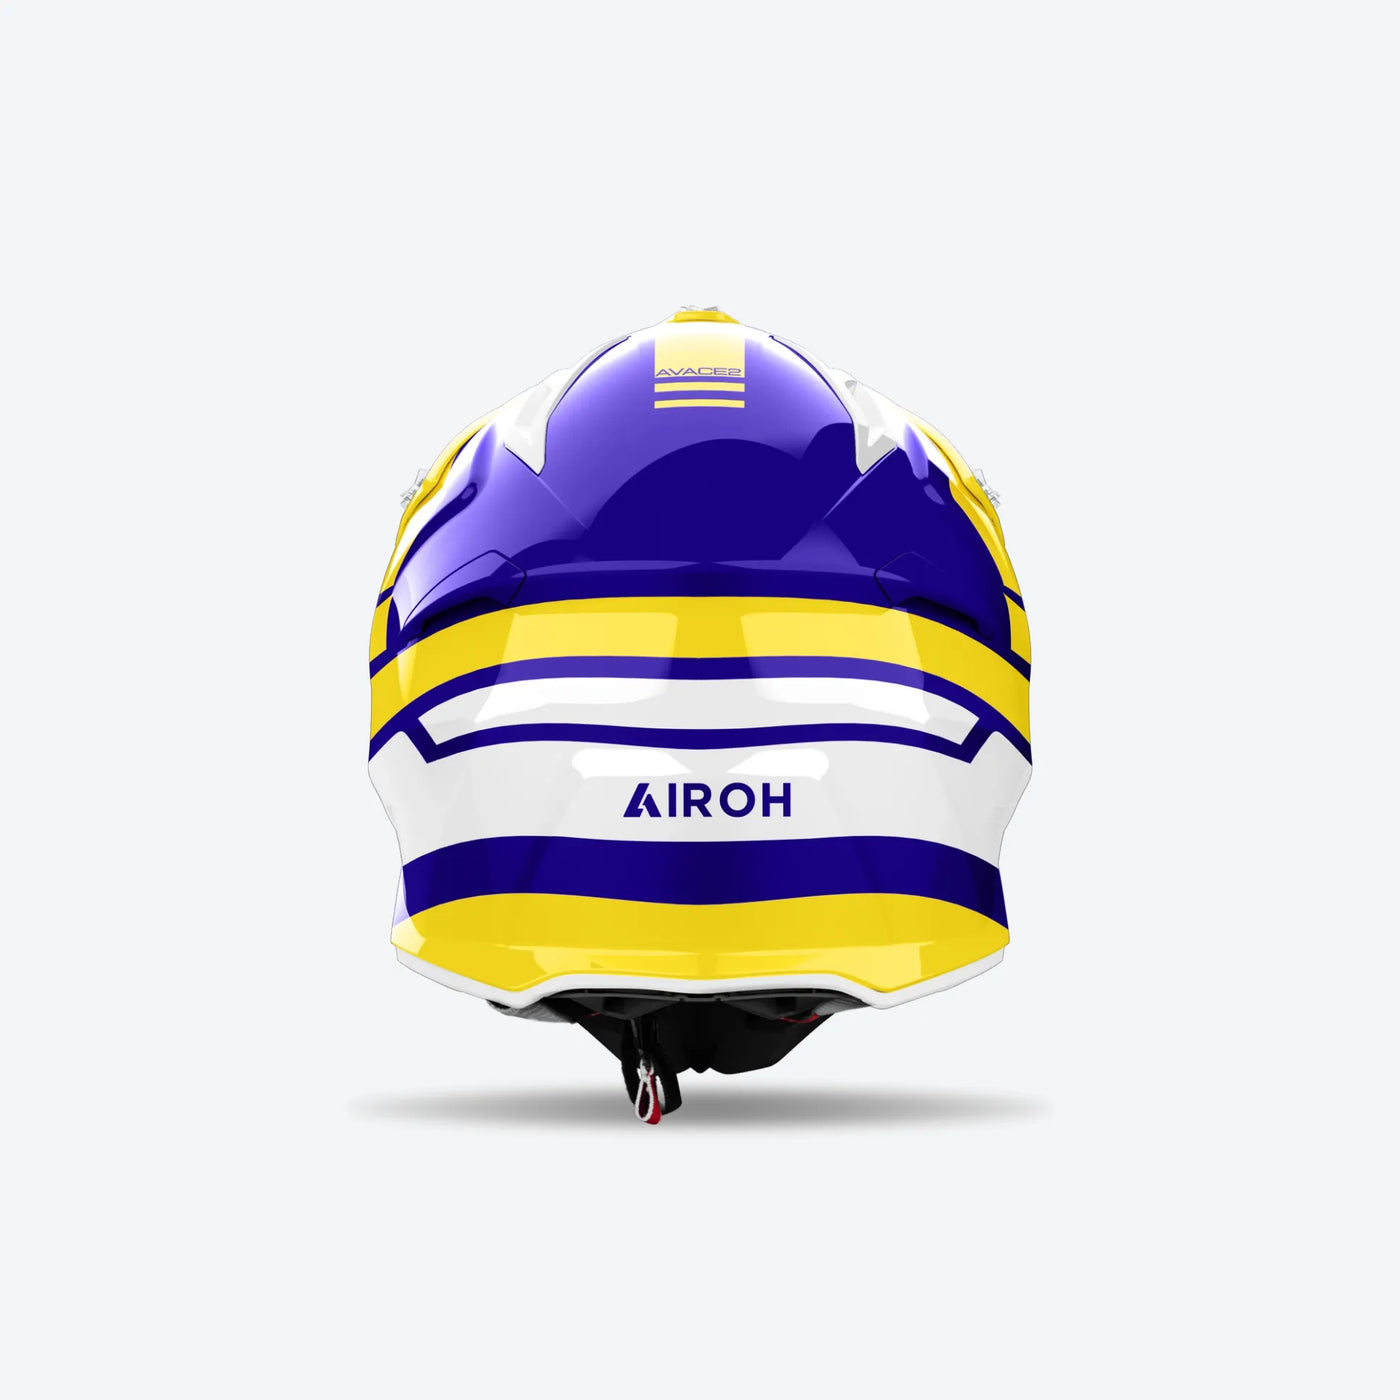 Airoh Aviator Ace 2 Sake Yellow Gloss Helmet